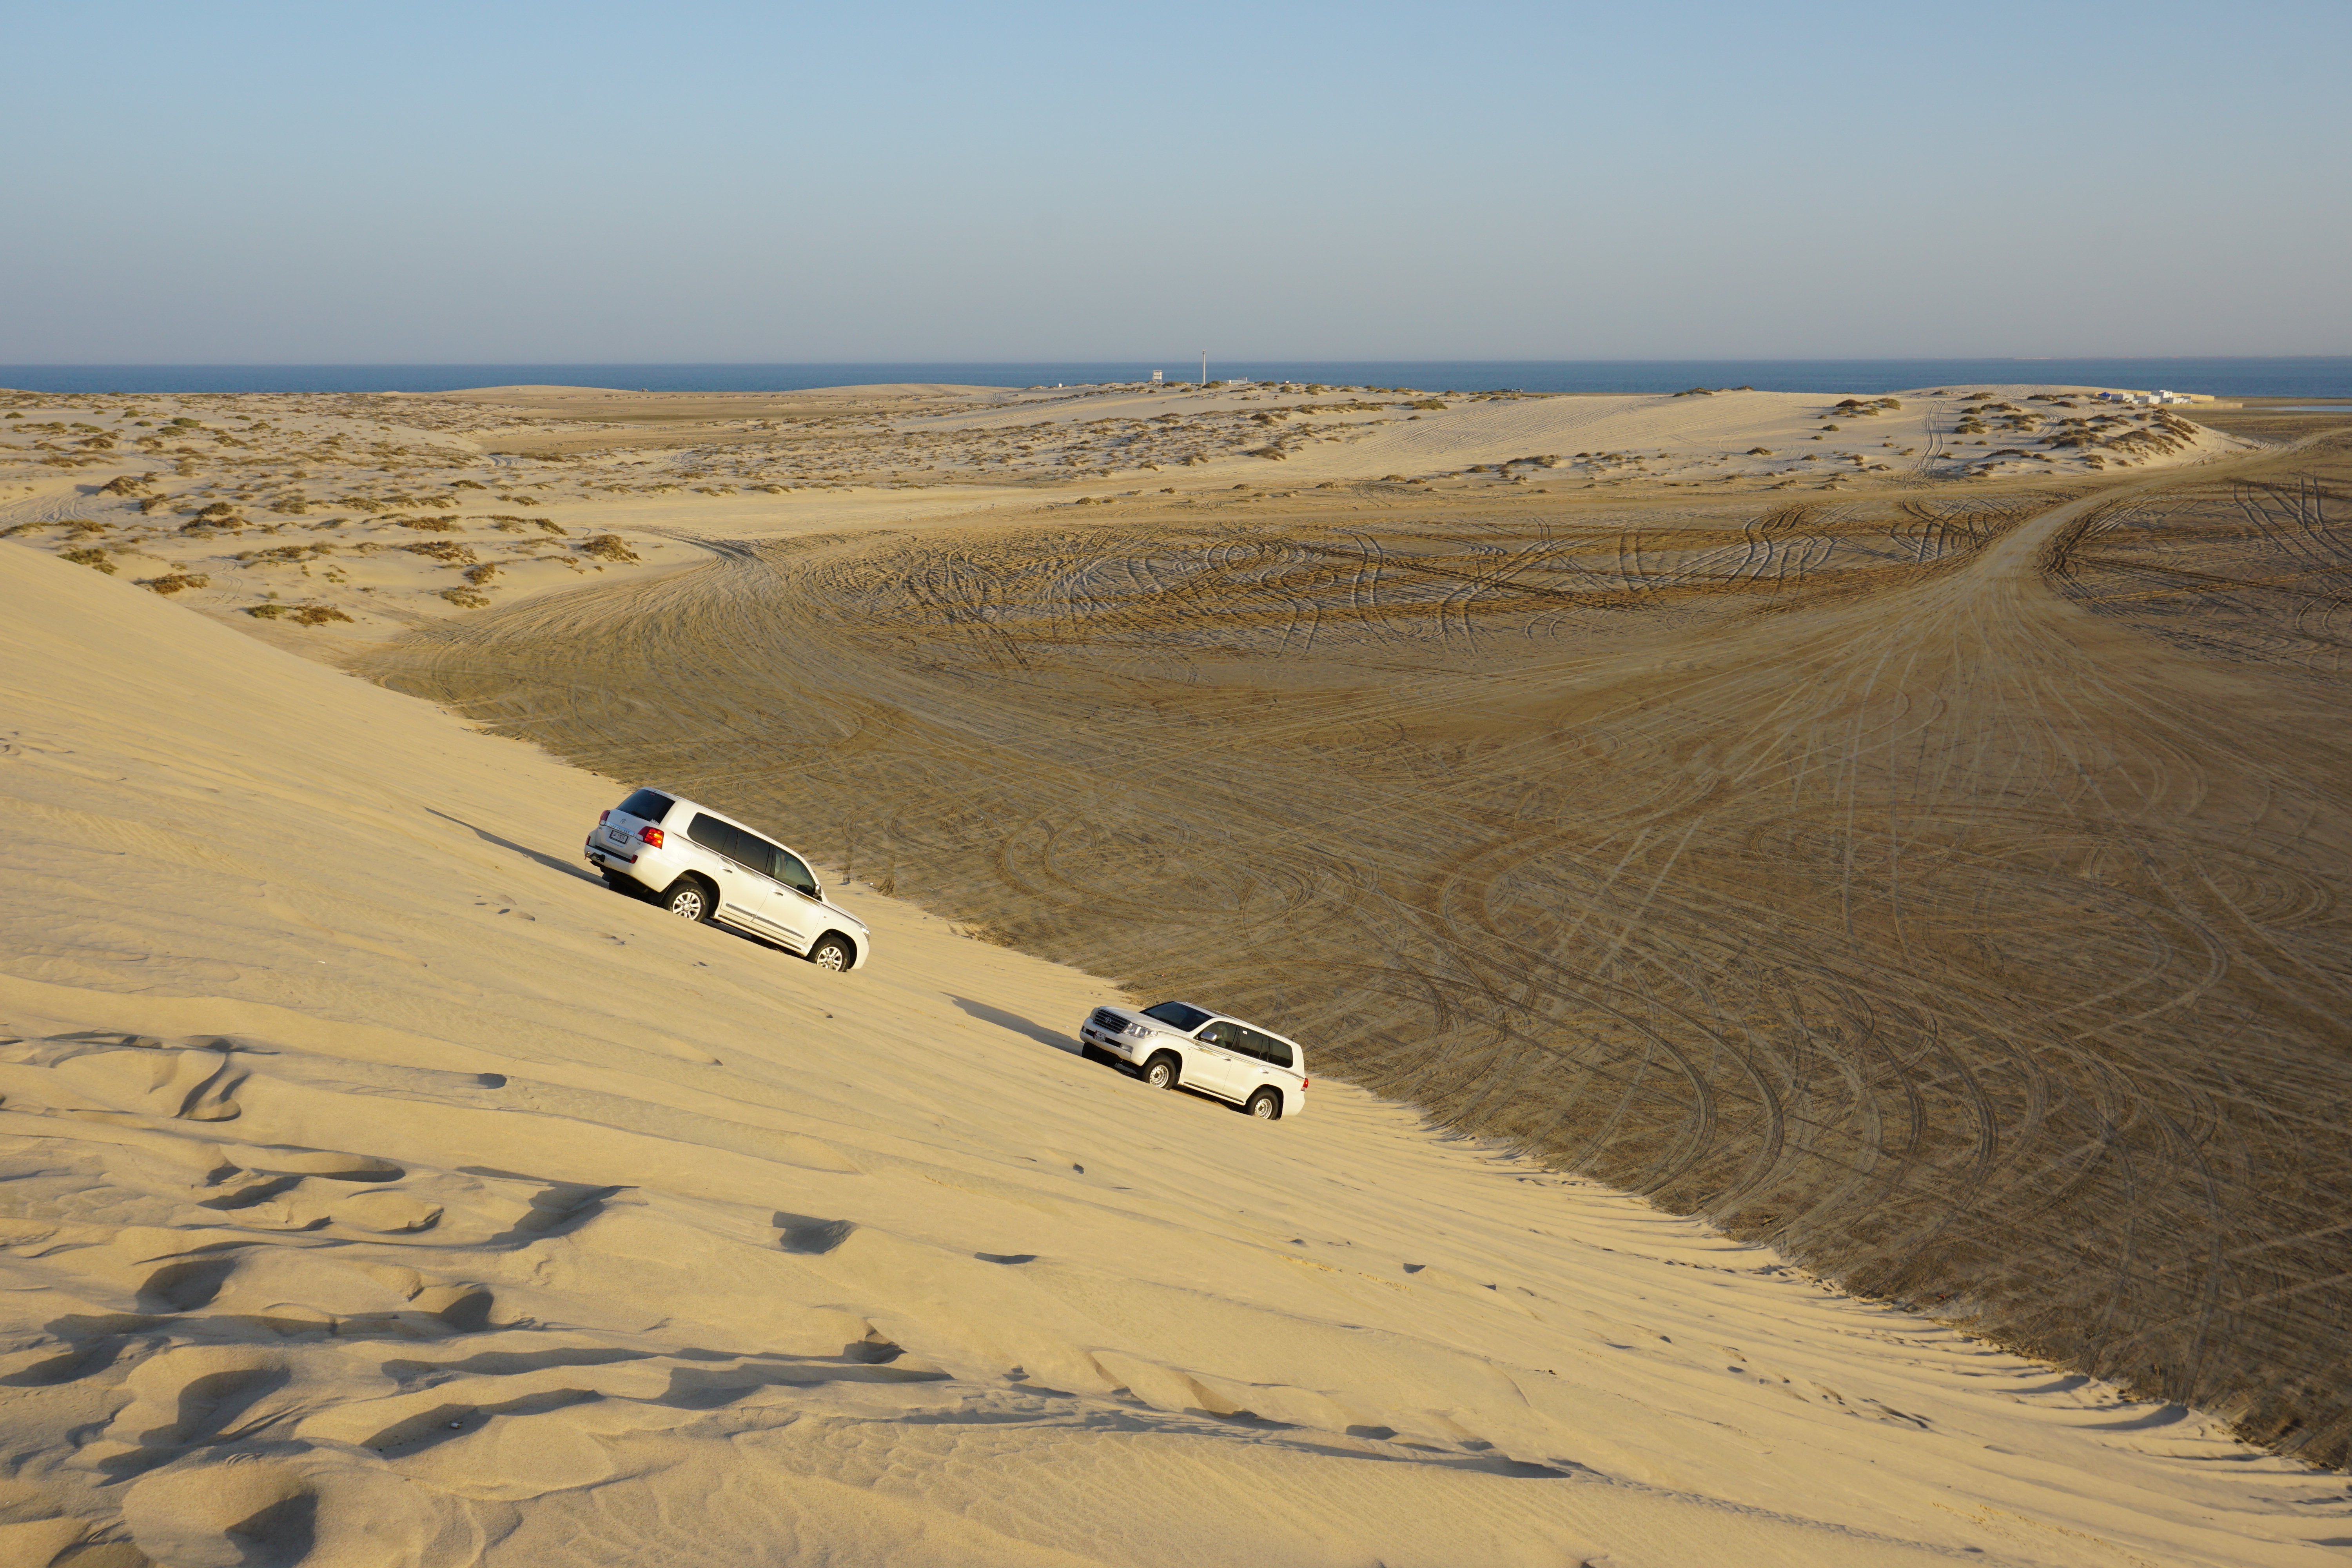 Tips for desert driving in Qatar